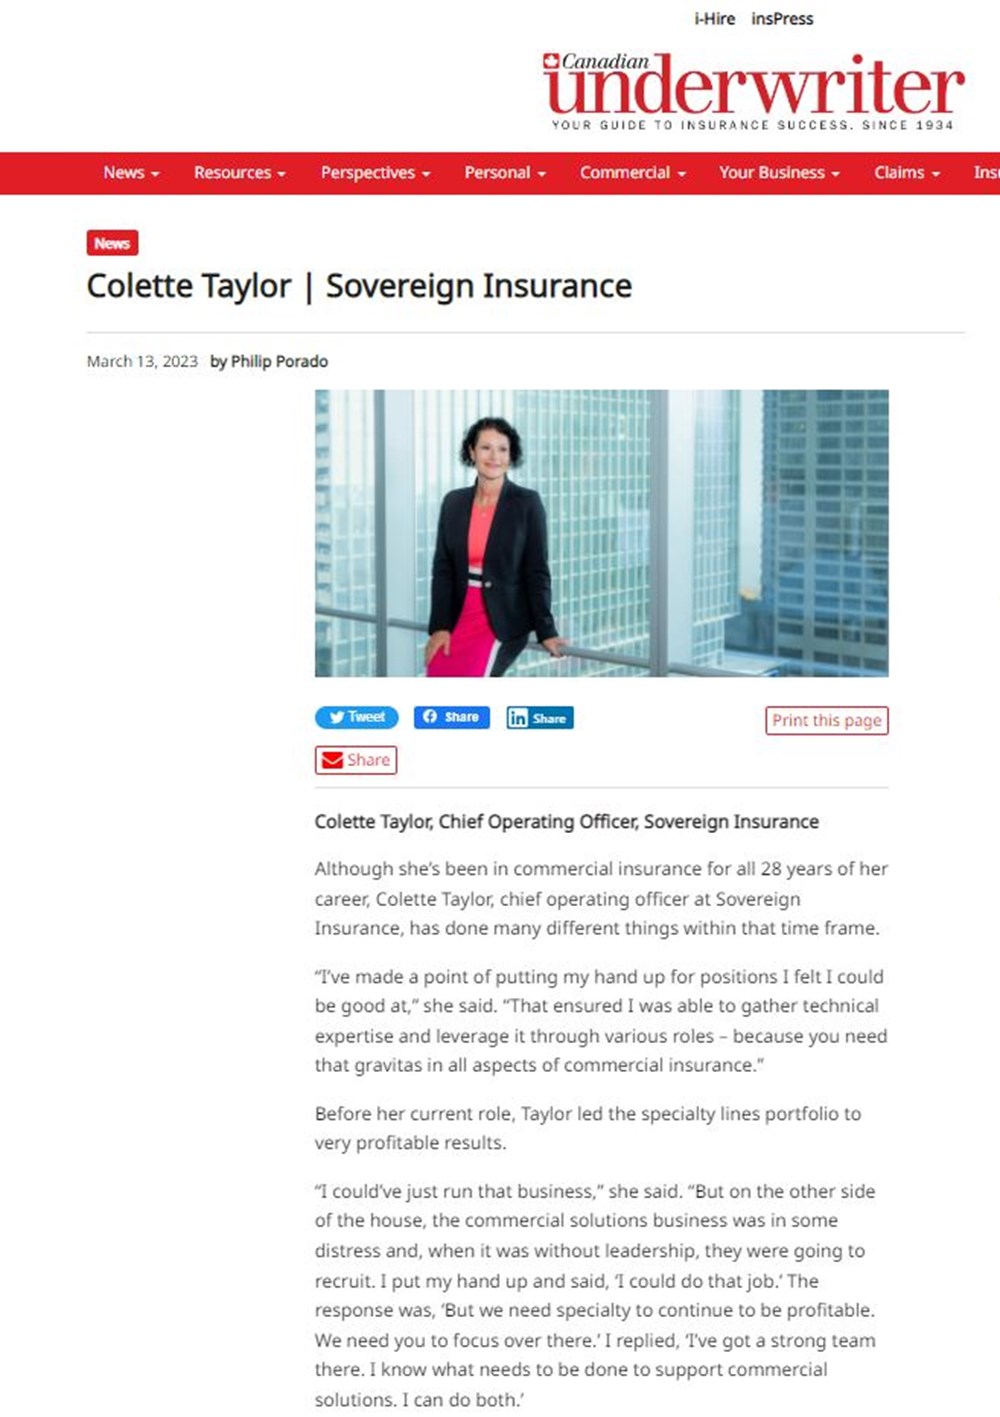 Capture d'écran d'un article du magazine Canadian Underwriter. On y voit une photo de Colette Taylor, une femme aux cheveux bouclés, vêtue d'une robe rose et d'une veste noire.